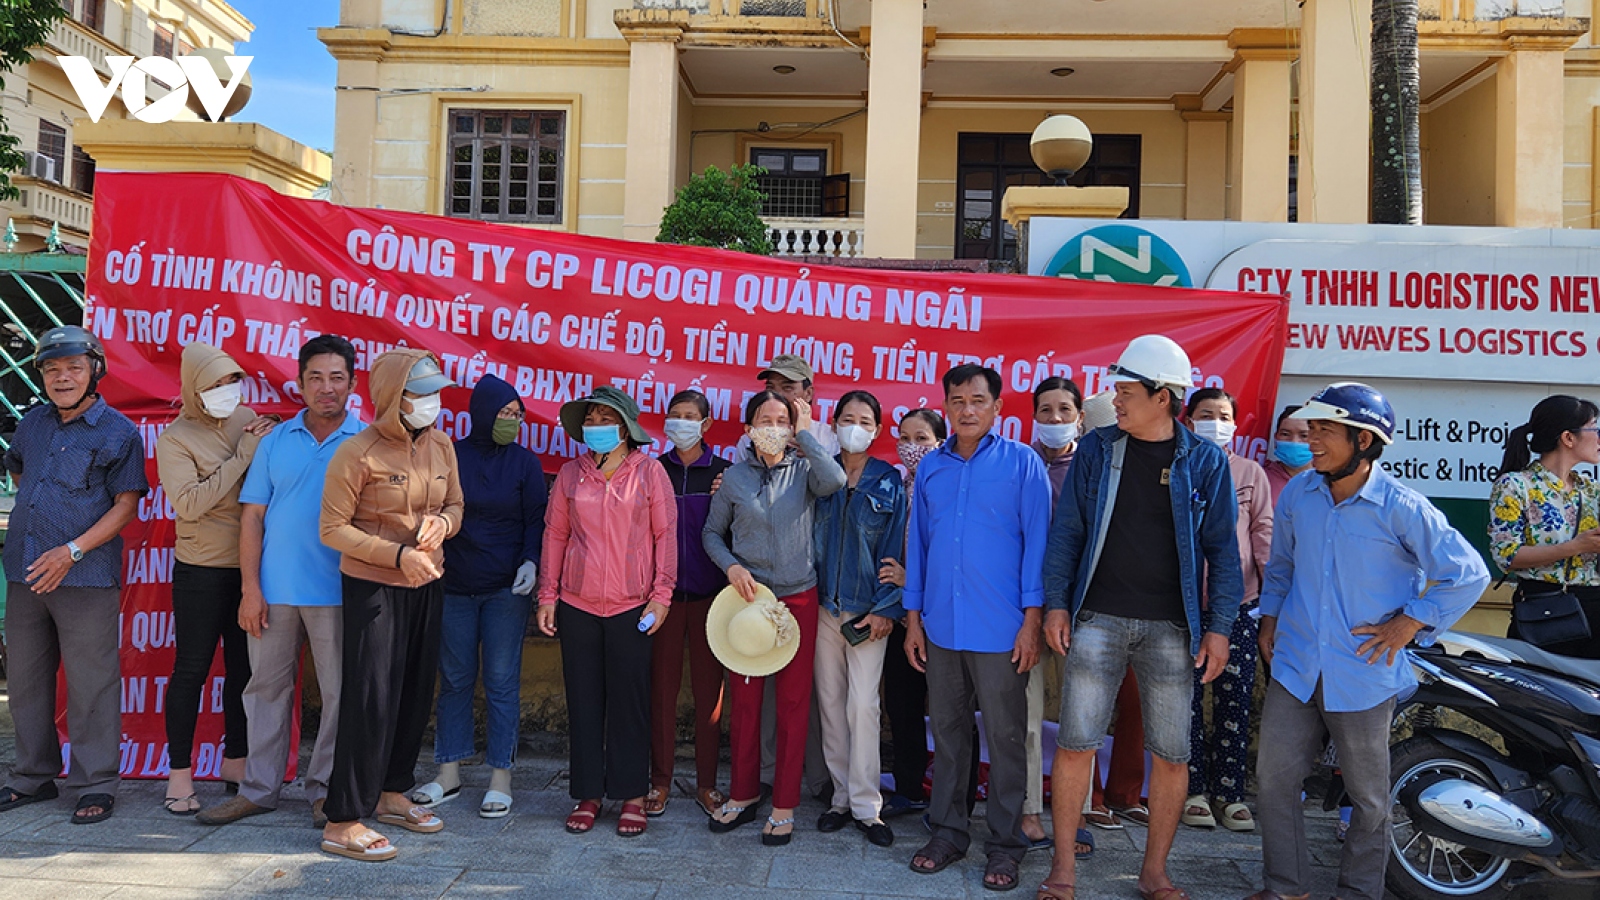 Hàng chục công nhân tụ tập, đòi tiền trợ cấp thôi việc tại Công ty Licogi Quảng Ngãi